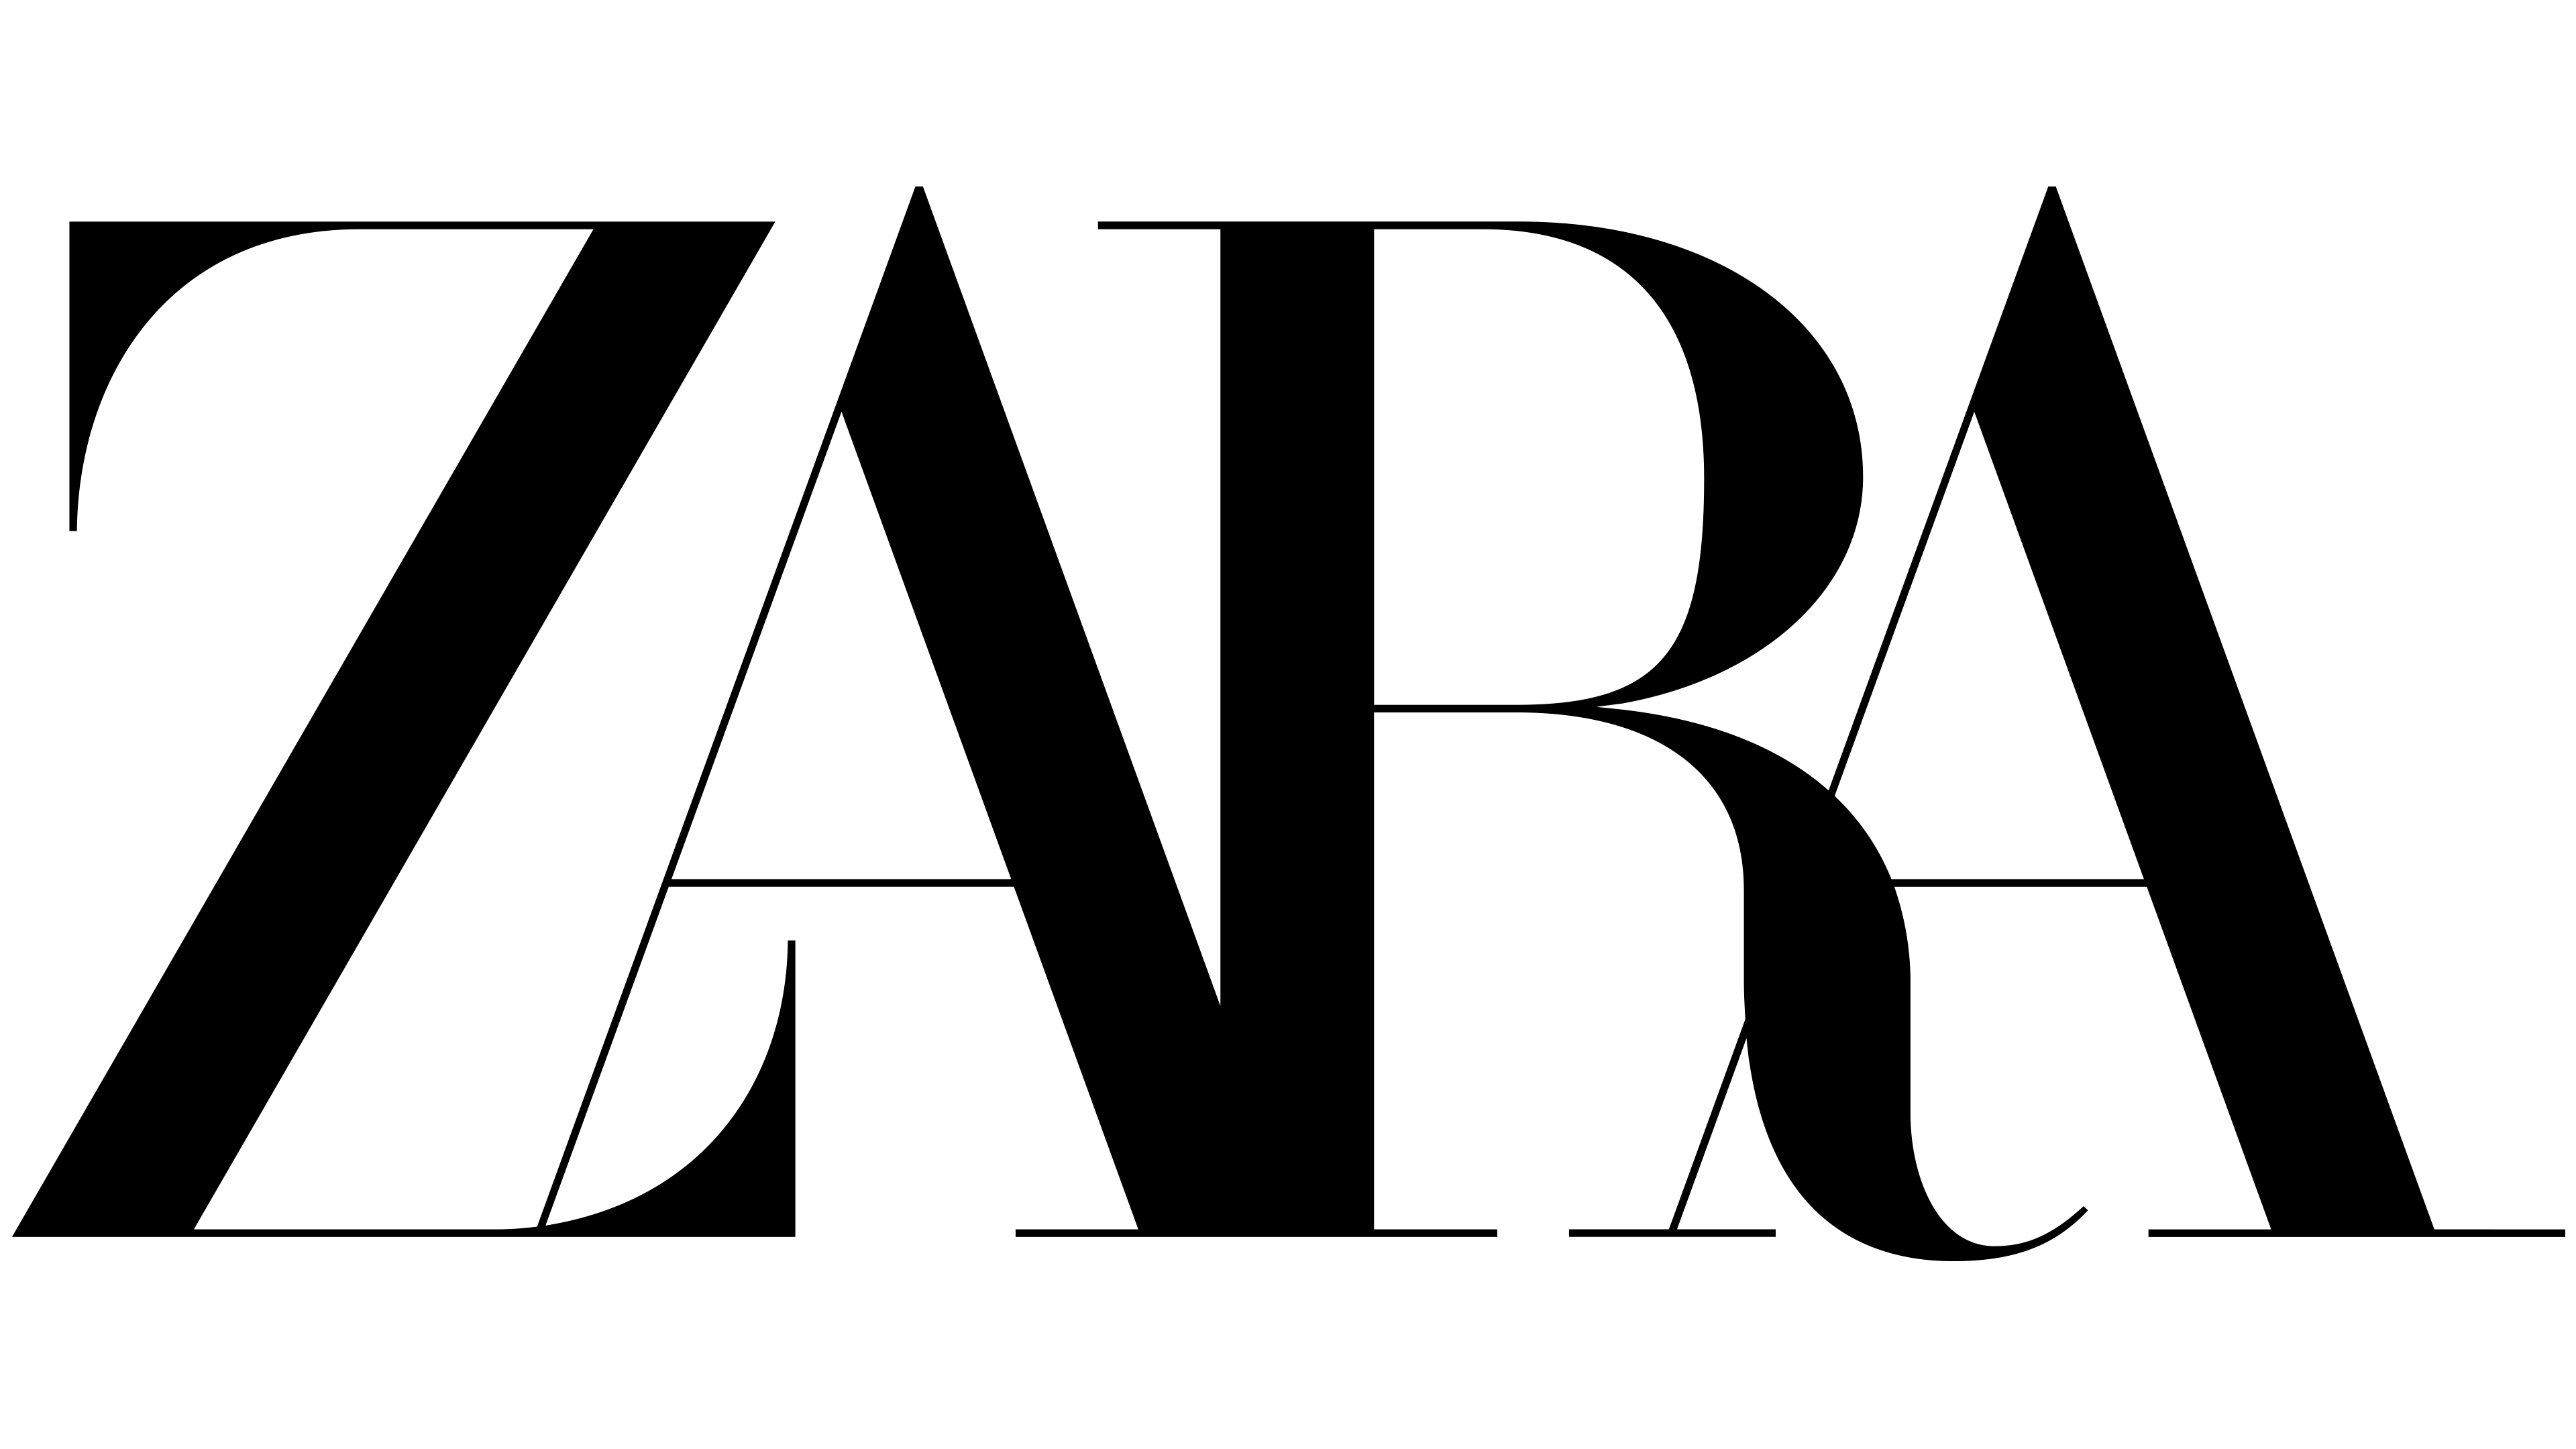 zara-logo-dan-simbol-makna-sejarah-png-merek-sexiz-pix